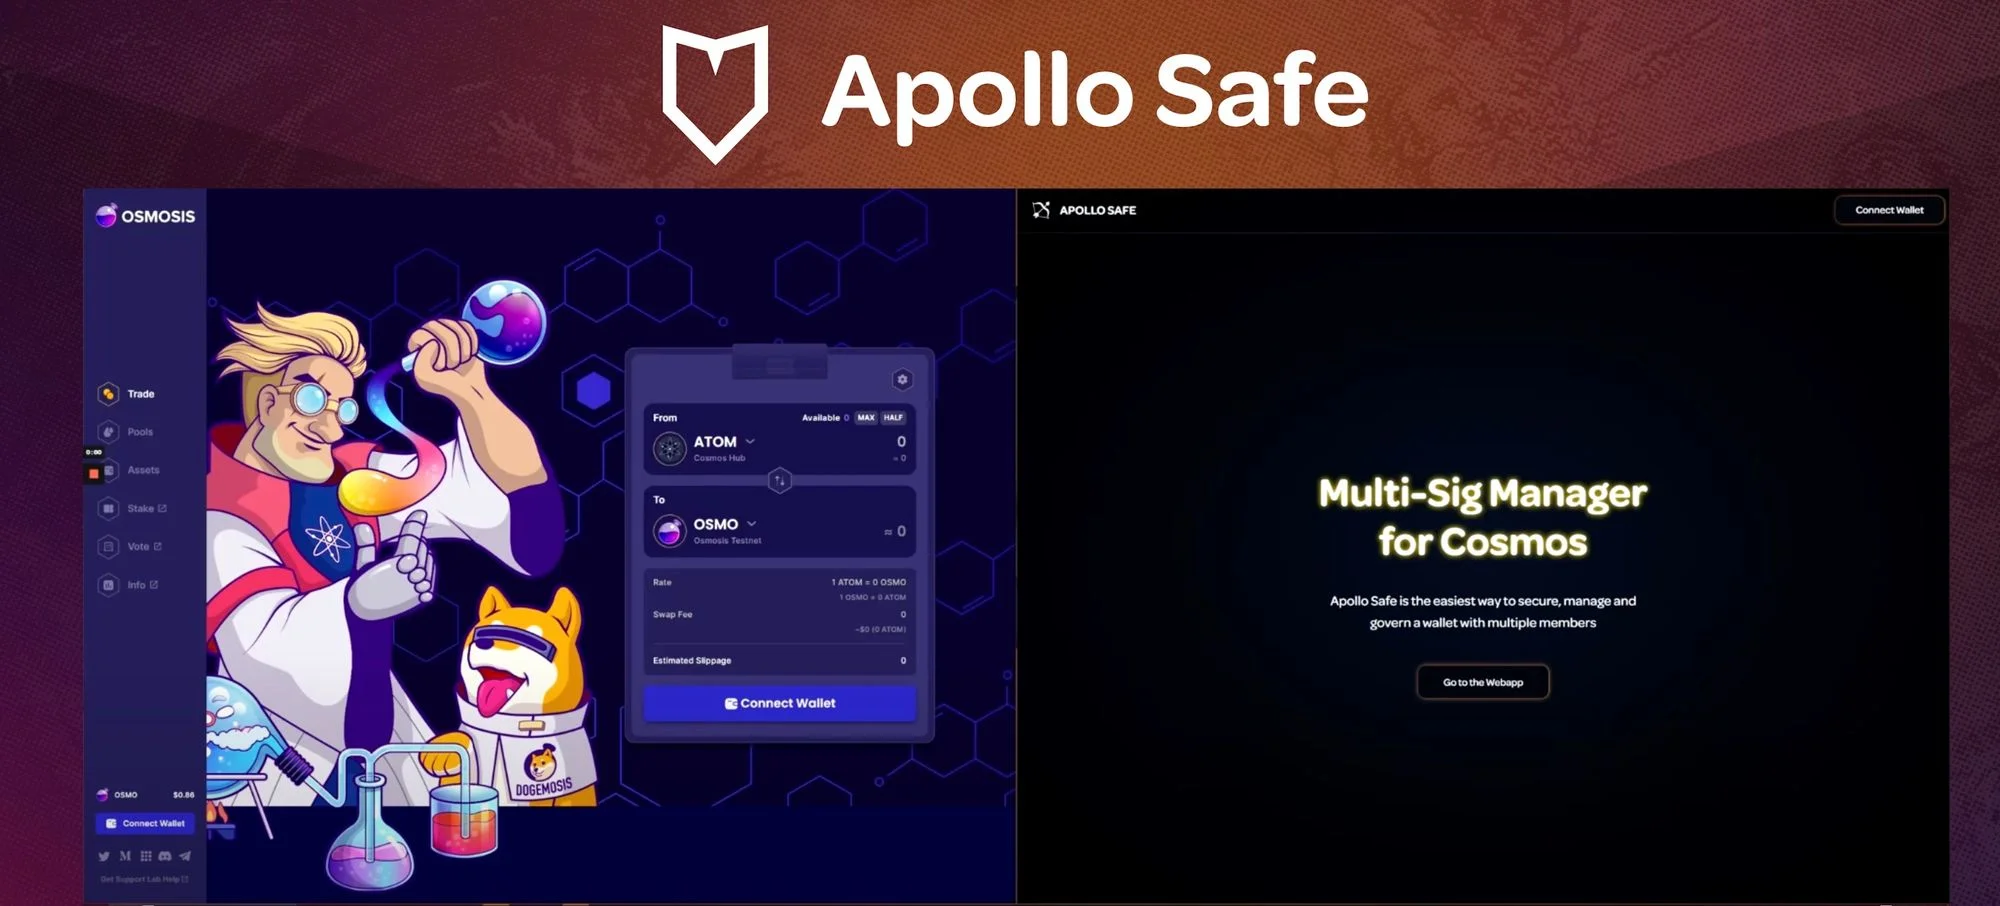 Apollo Safe image